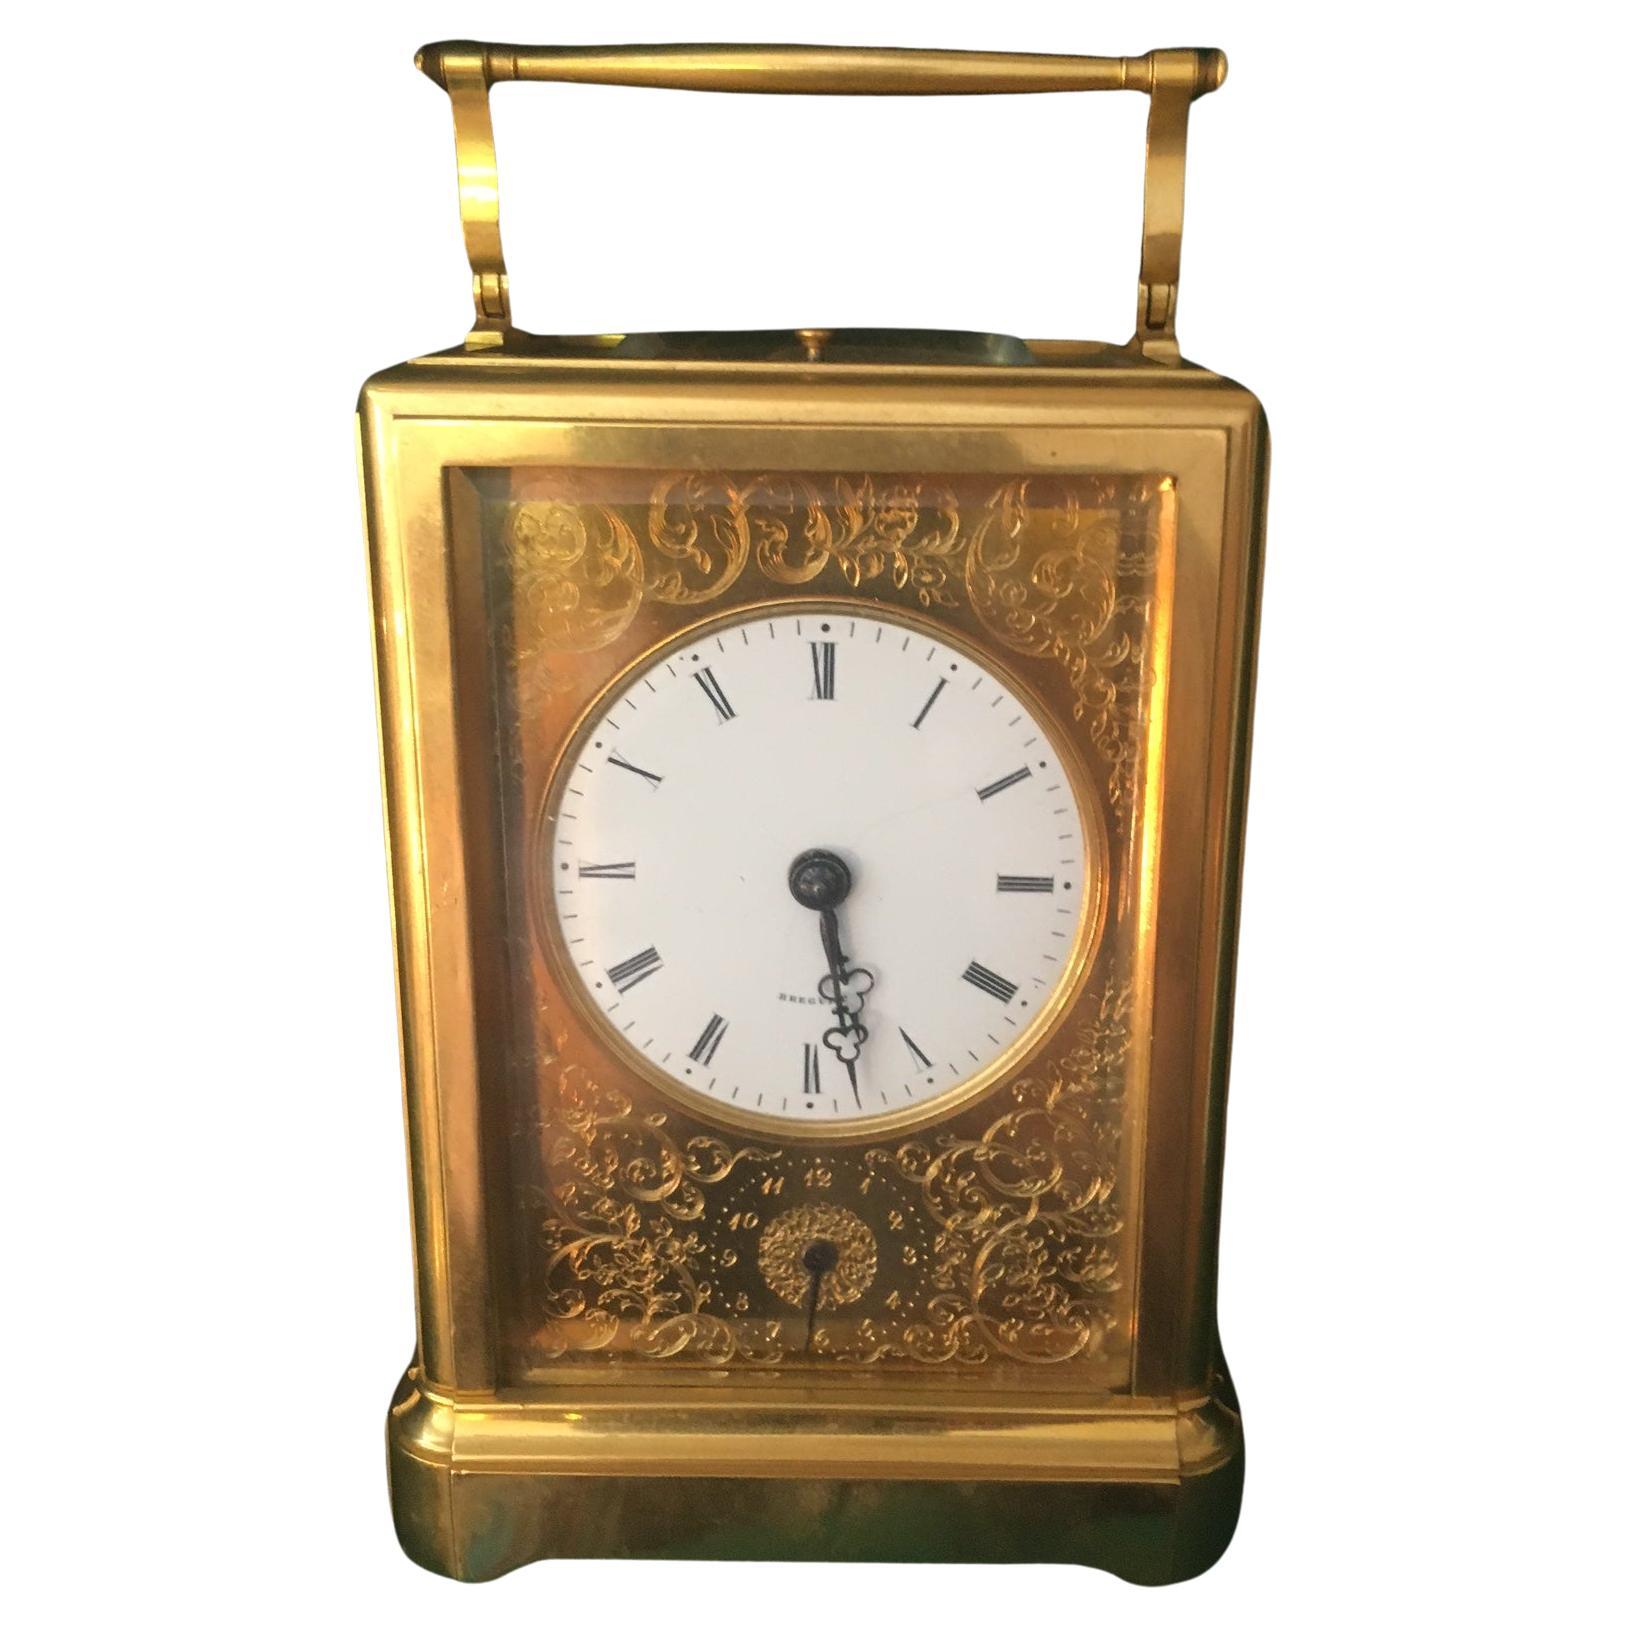  Breguet Neveu Compagnie à Paris. Grande Sonnerie Striking Carriage Clock  For Sale